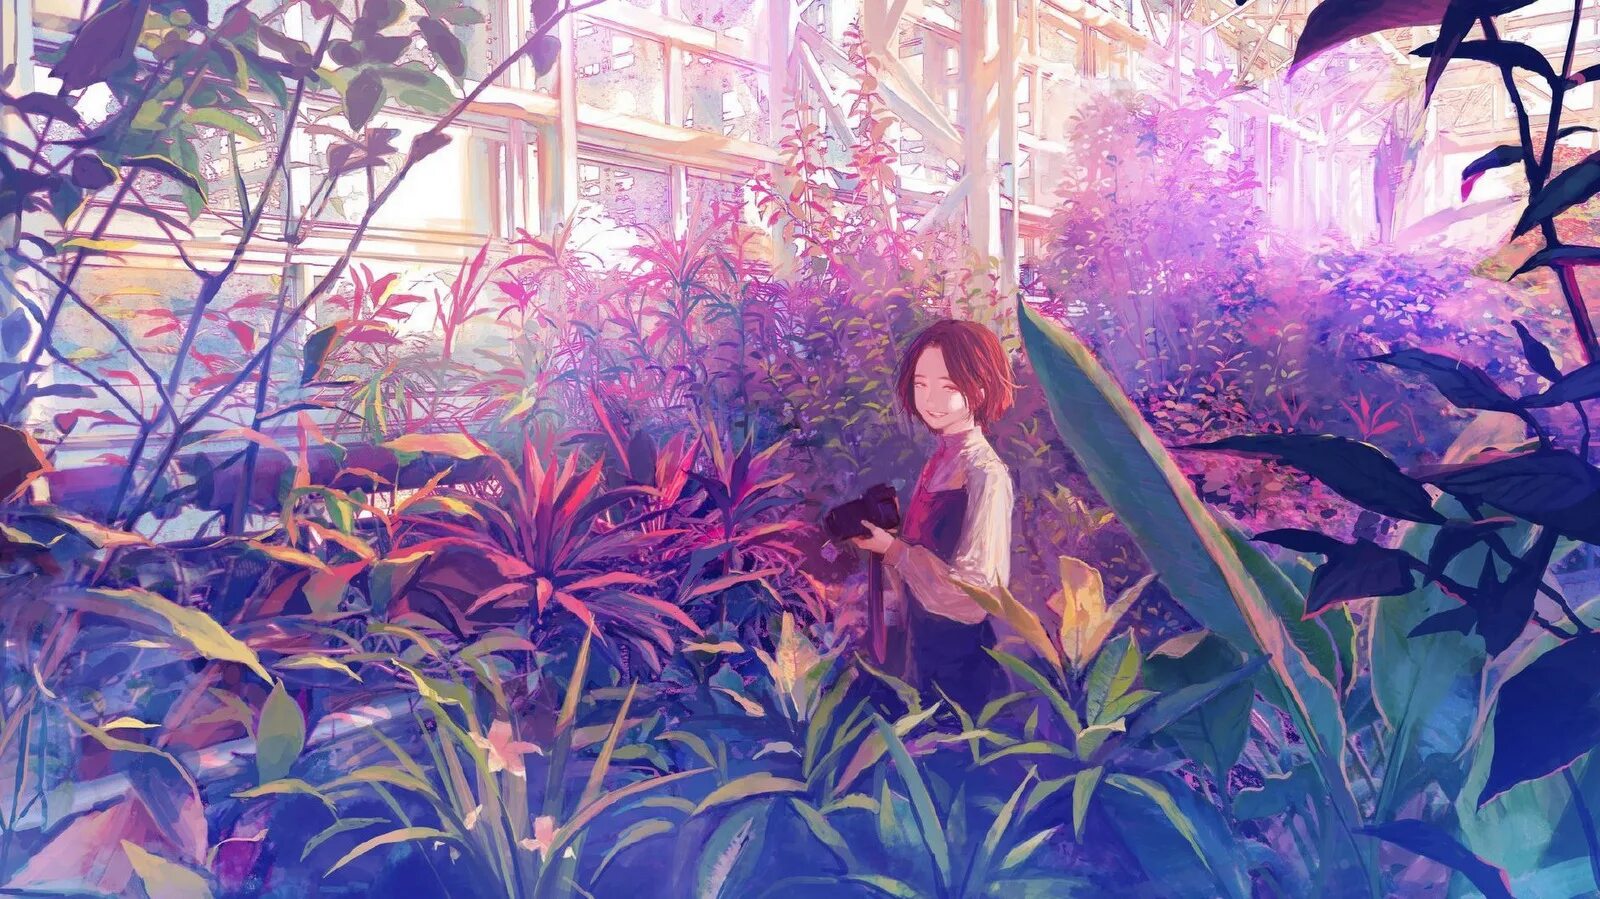 Манга они живут в саду. Девушка в цветочной оранжерее. Оранжерея с цветами фон. Цветочная оранжерея арт. Обои на рабочий стол художники.